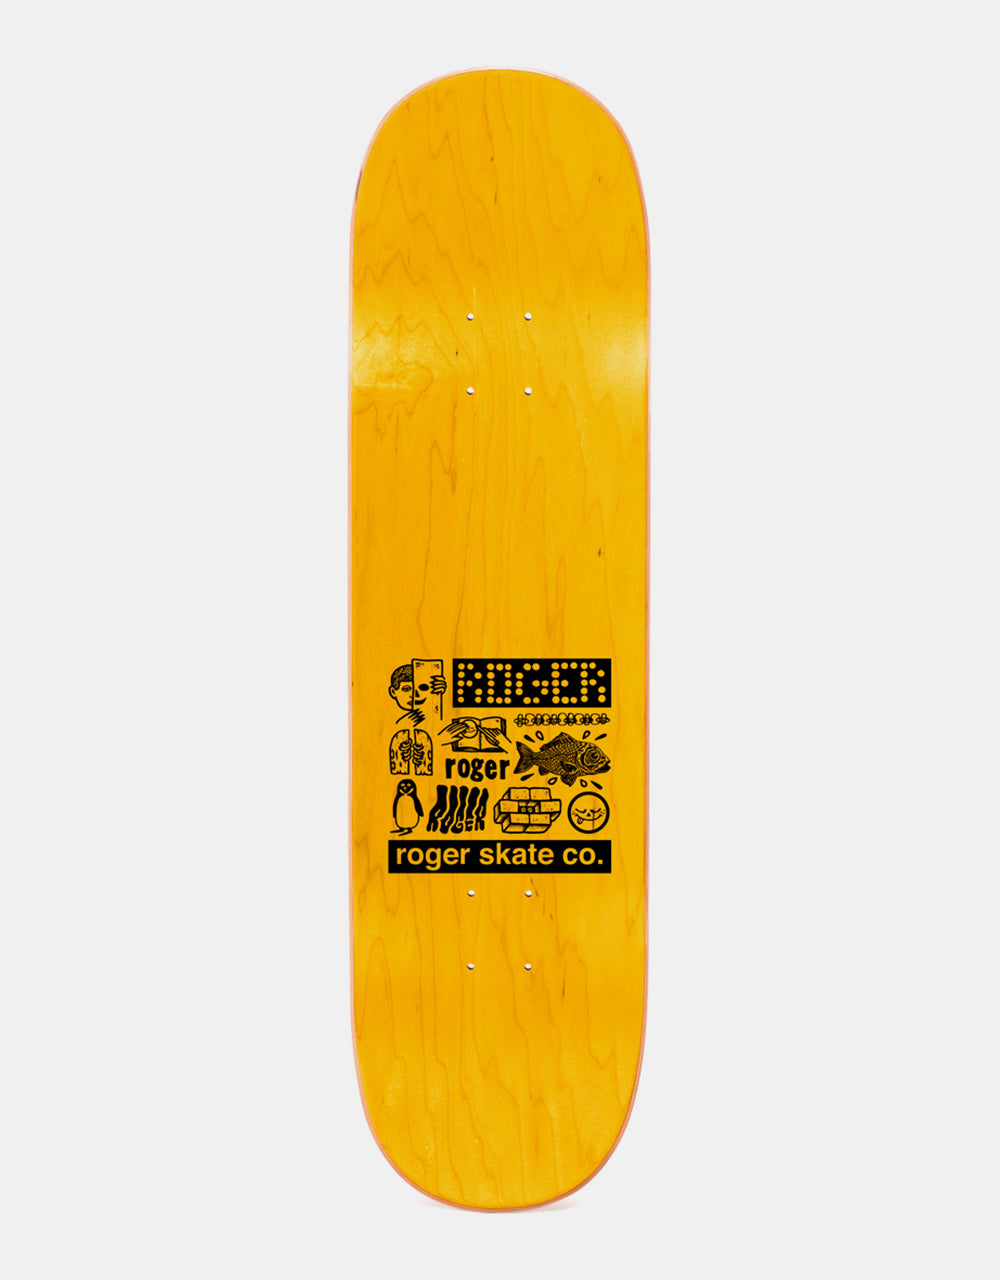 Roger Half Roger Stripes Skateboard Deck - 8.375"